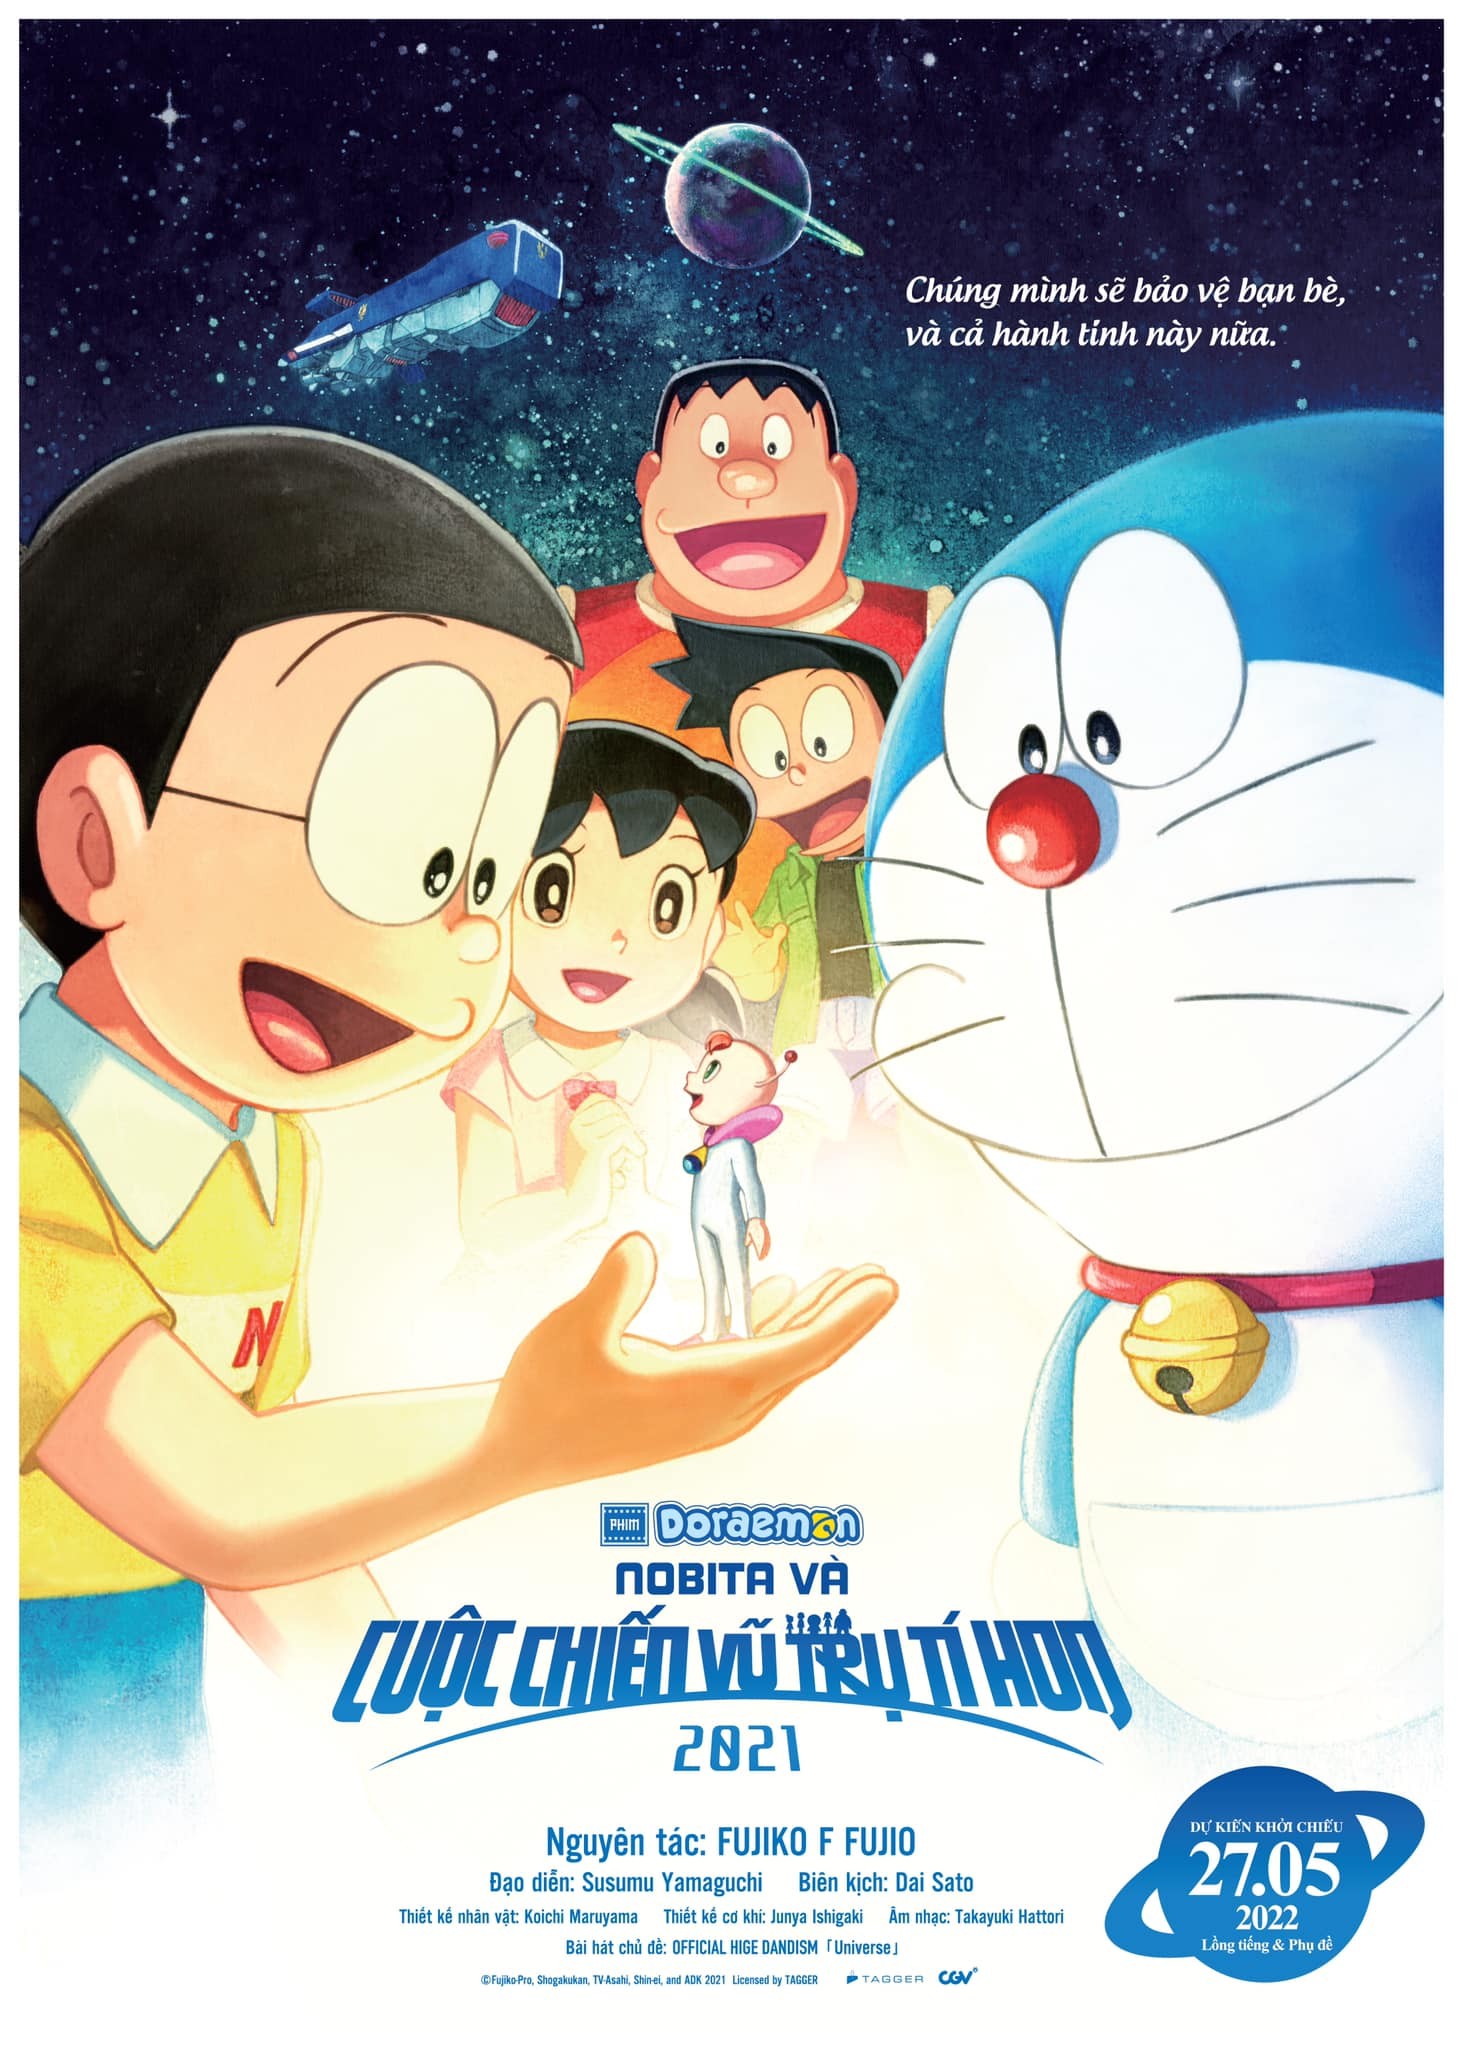 Doraemon - Nobita Và Cuộc Chiến Vũ Trụ Tí Hon 2021 -  (2022)